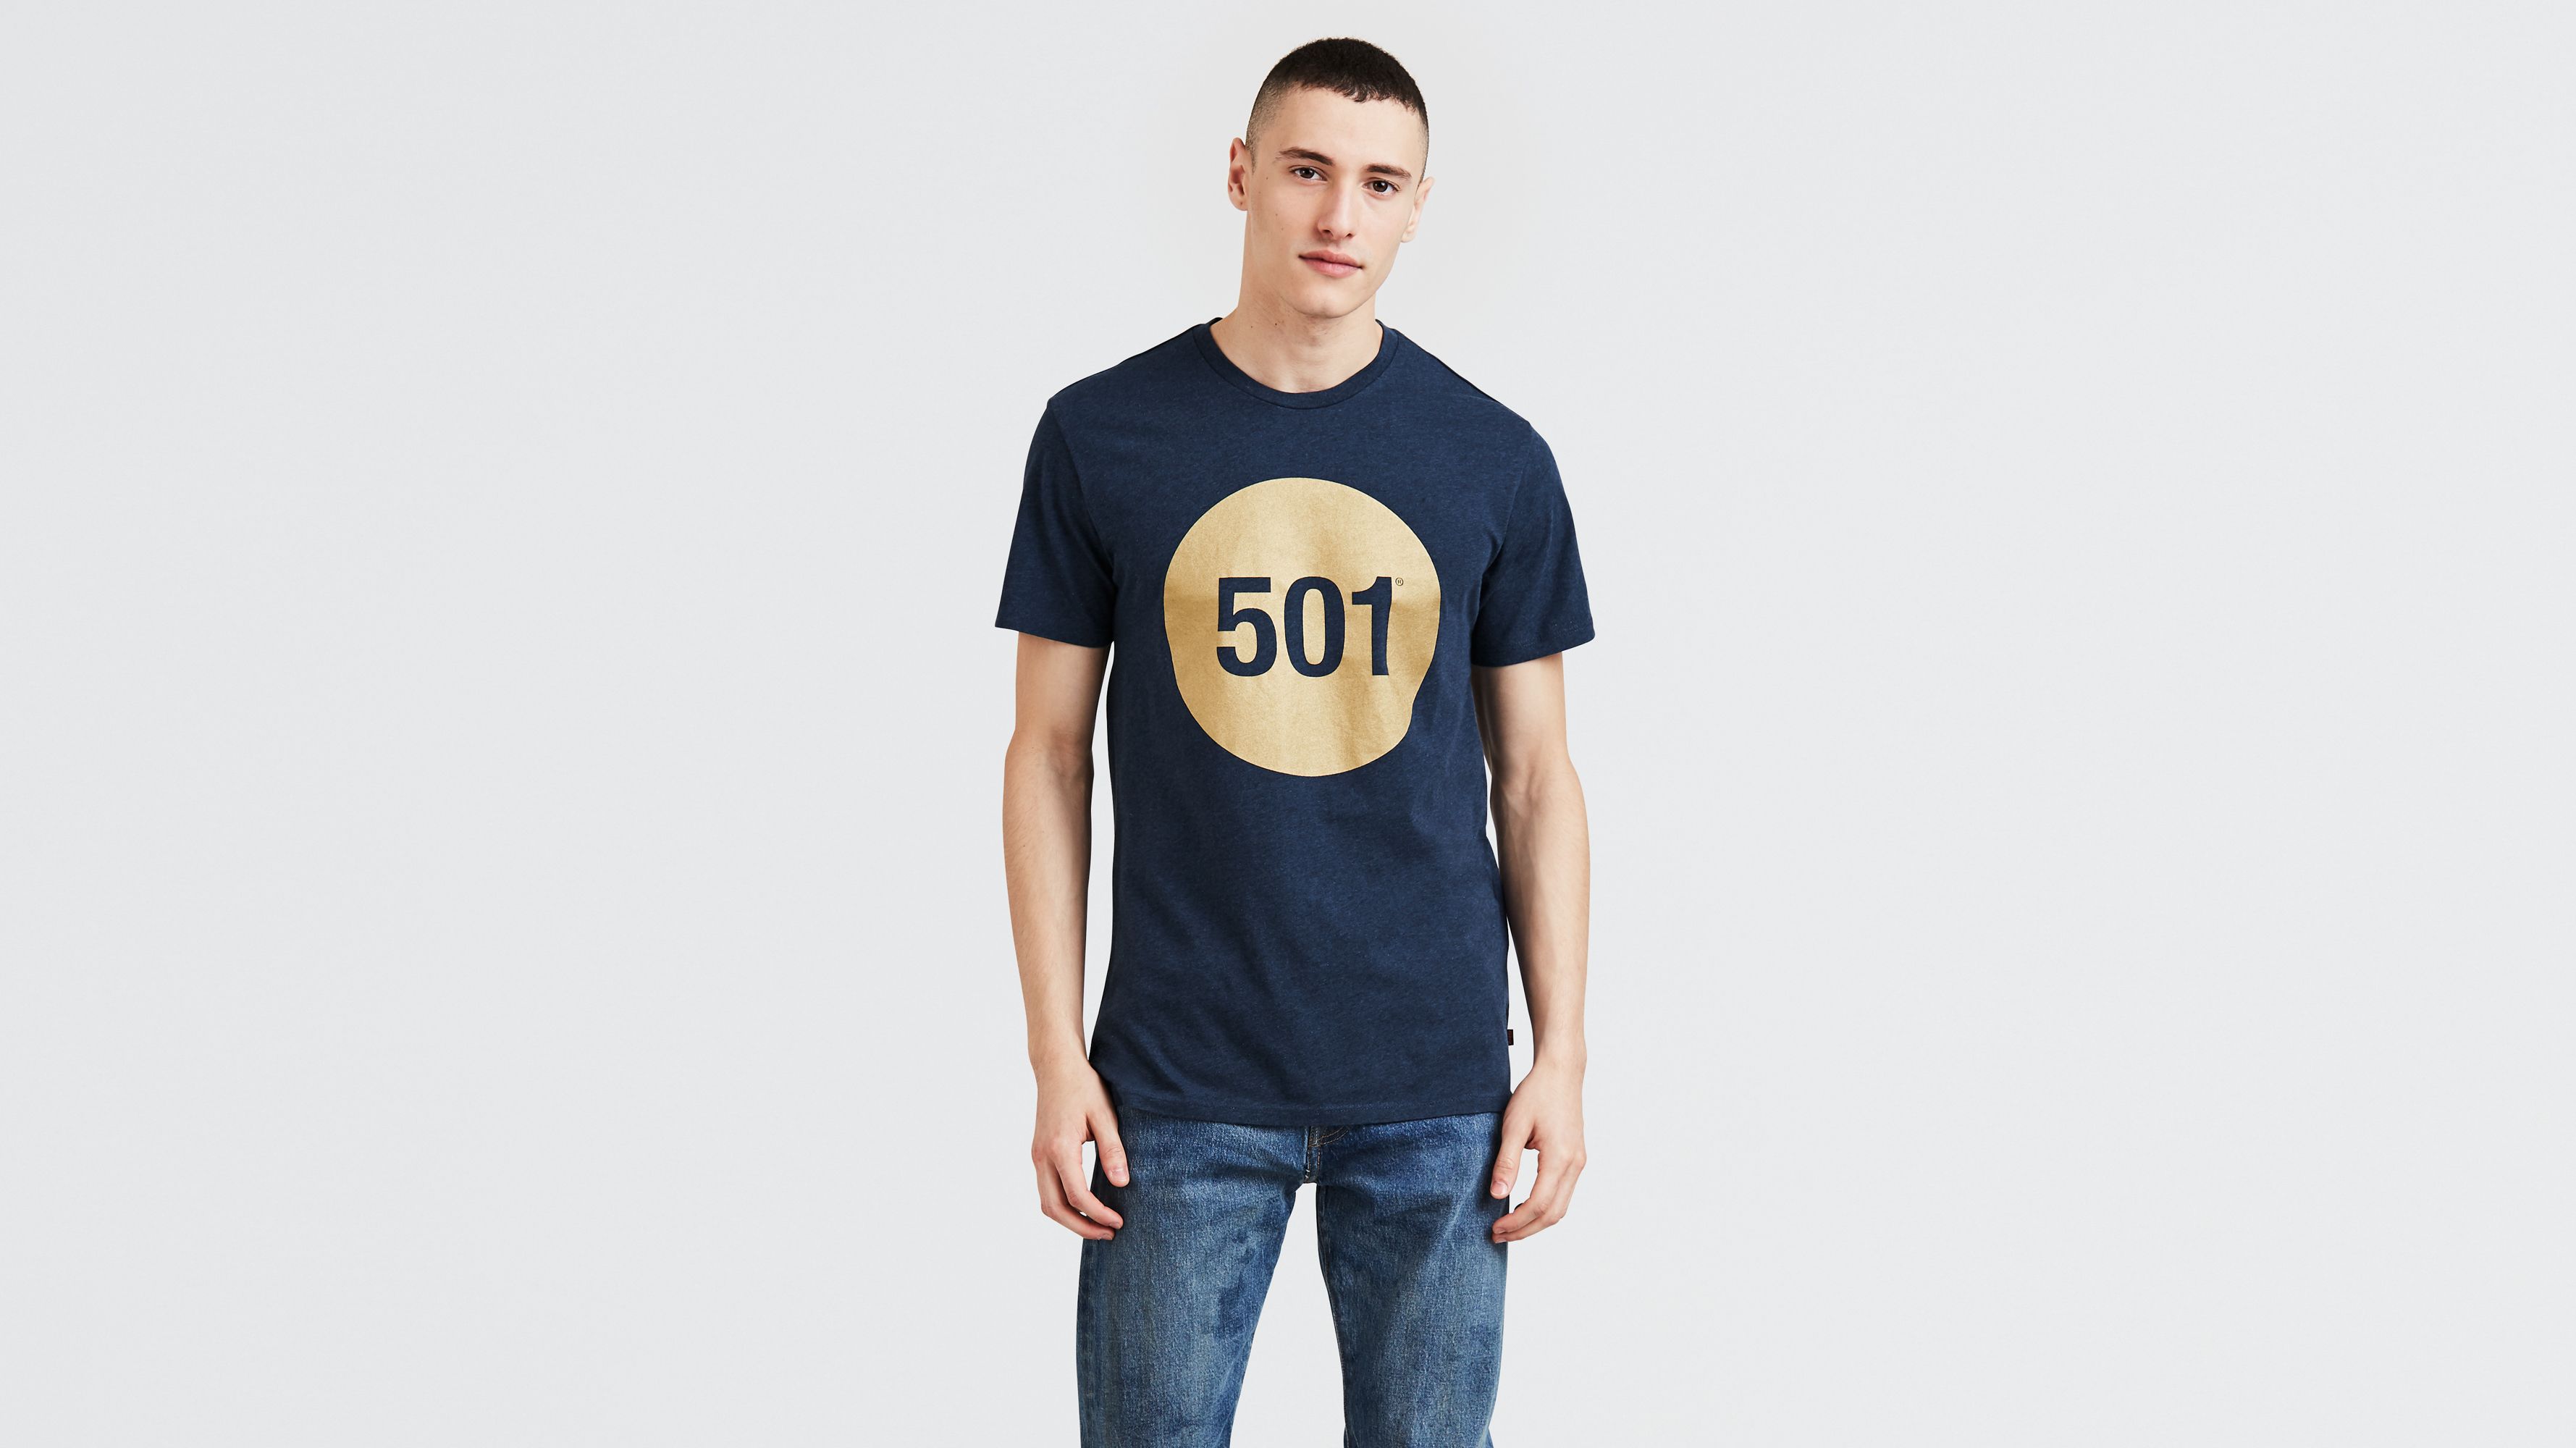 501 tshirt